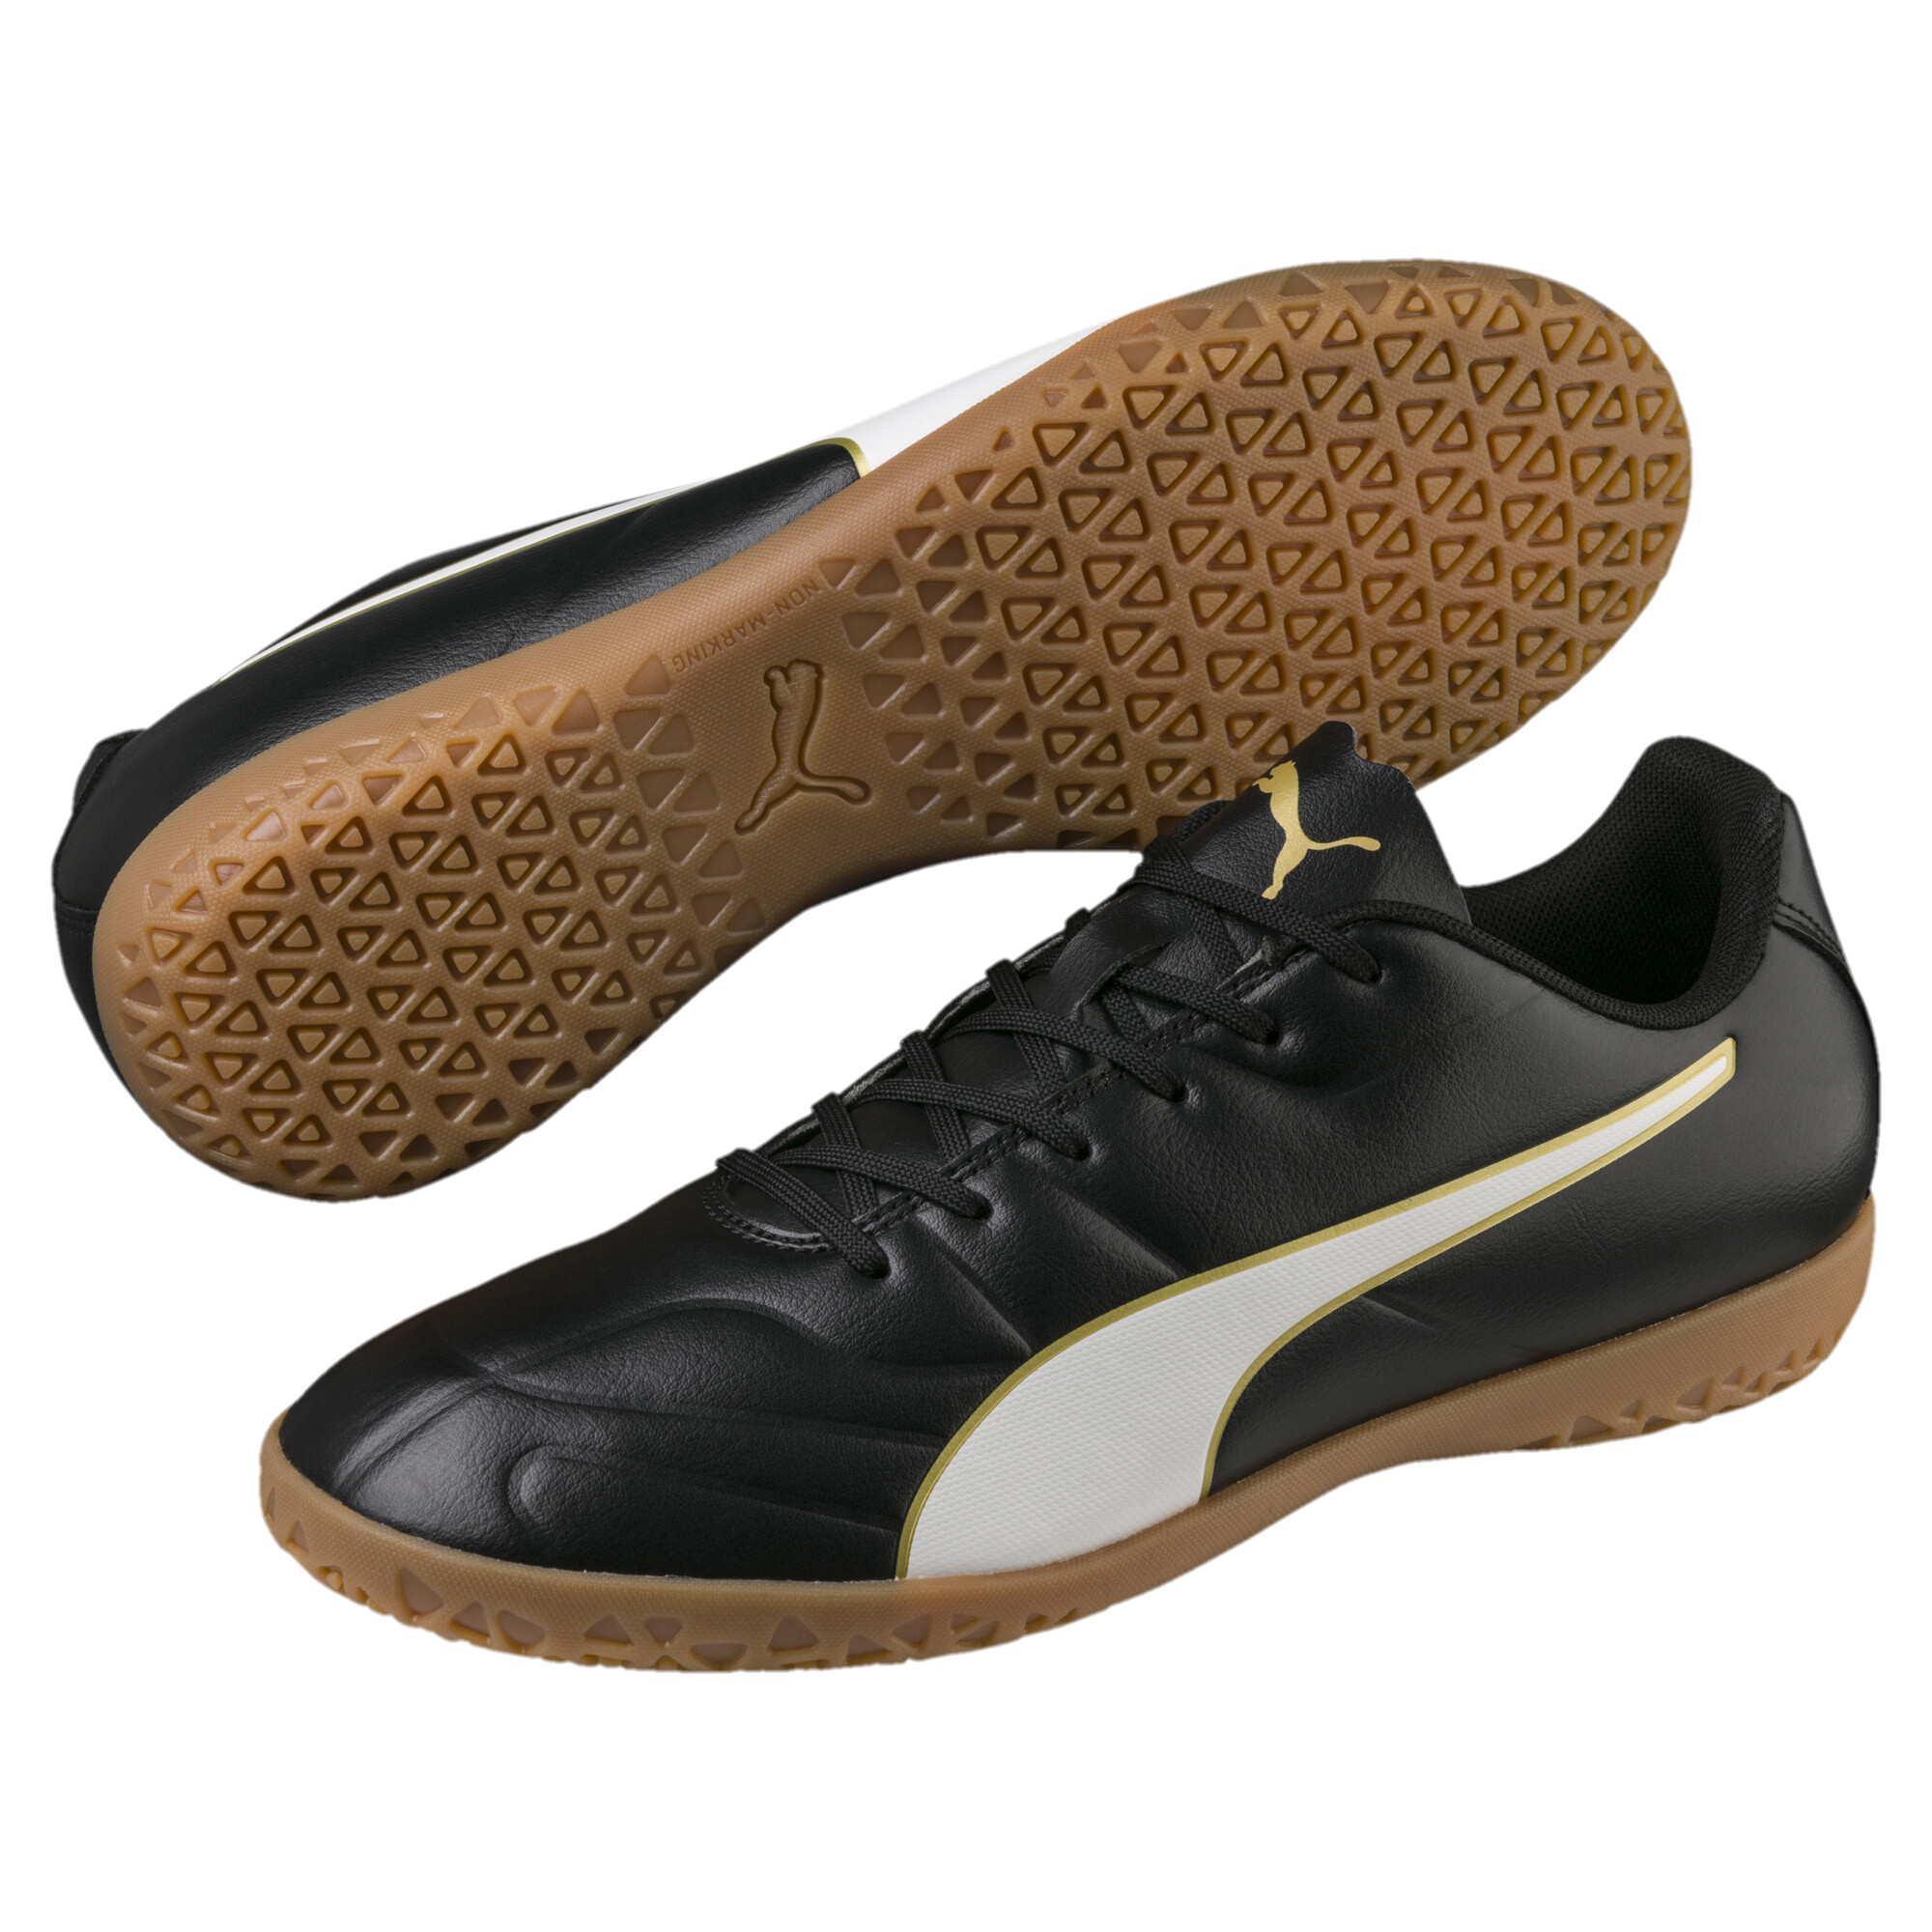 puma classico c indoor football shoes mens